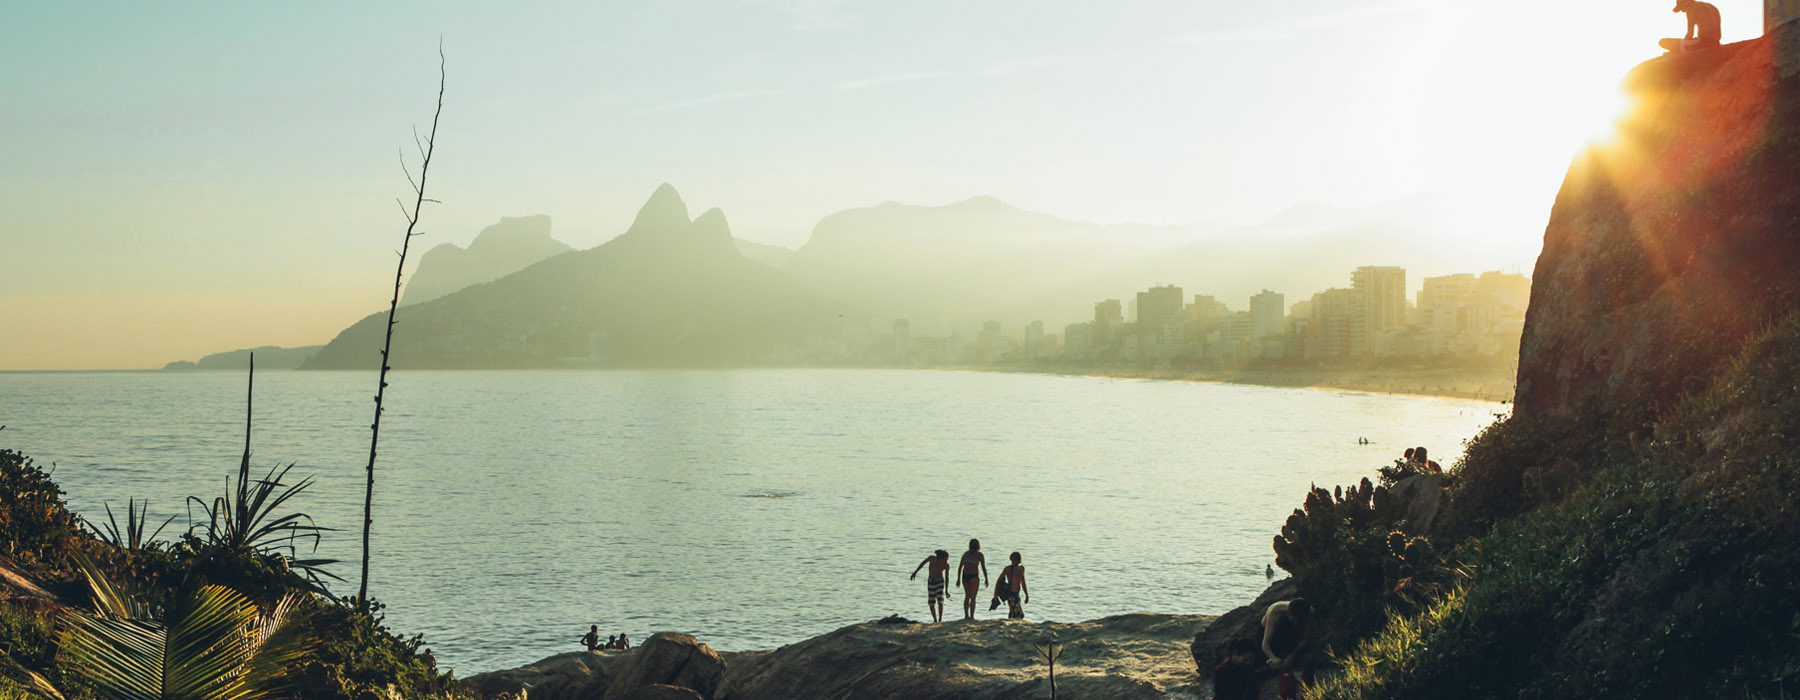 Voyages au lent cours Brésil